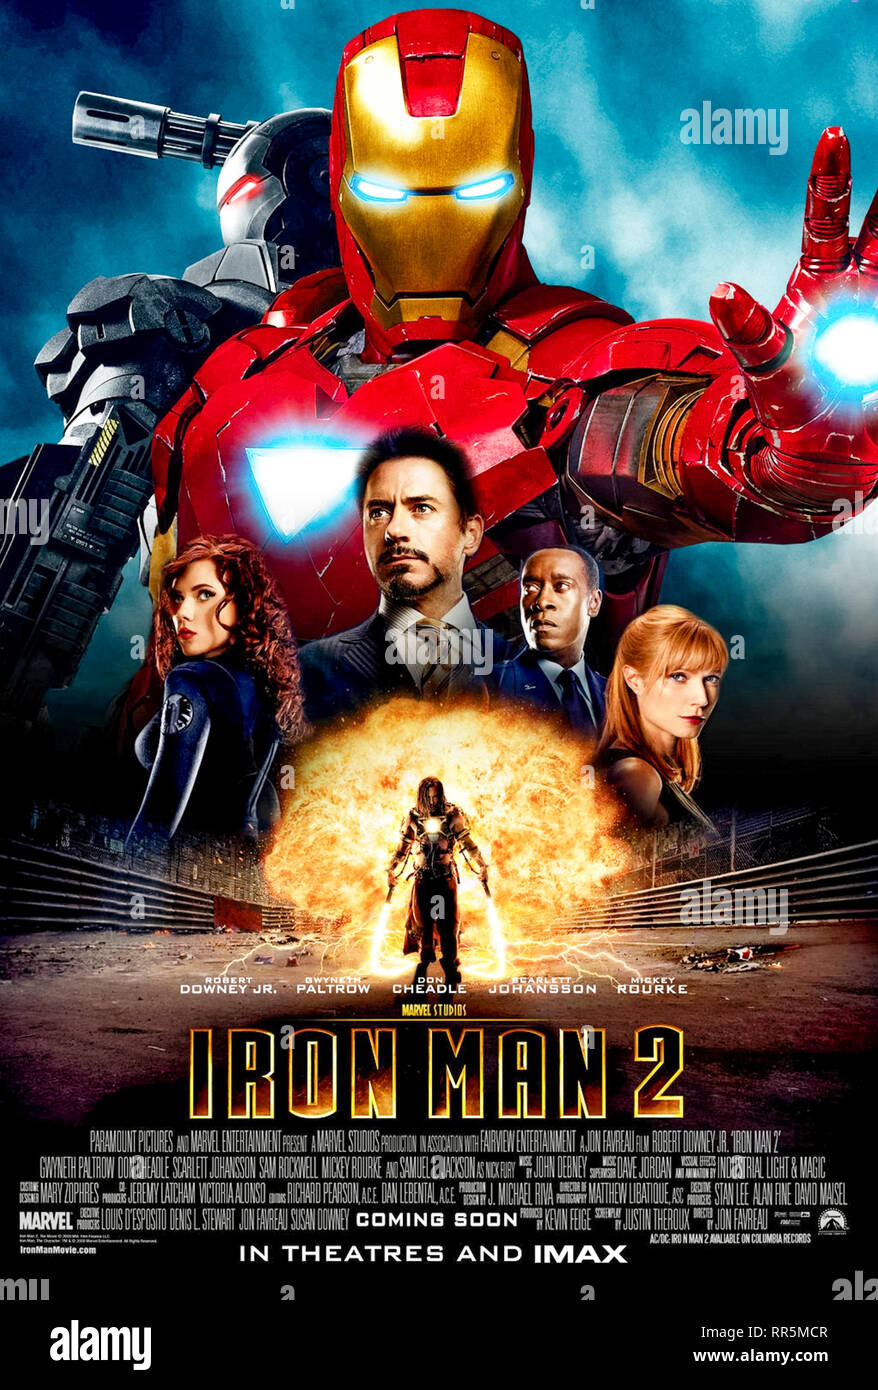 Iron Man 2 (2010), dirigida por Jon Favreau y protagonizada por Robert Downey Jr., Mickey Rourke y Gwyneth Paltrow. Foto de stock